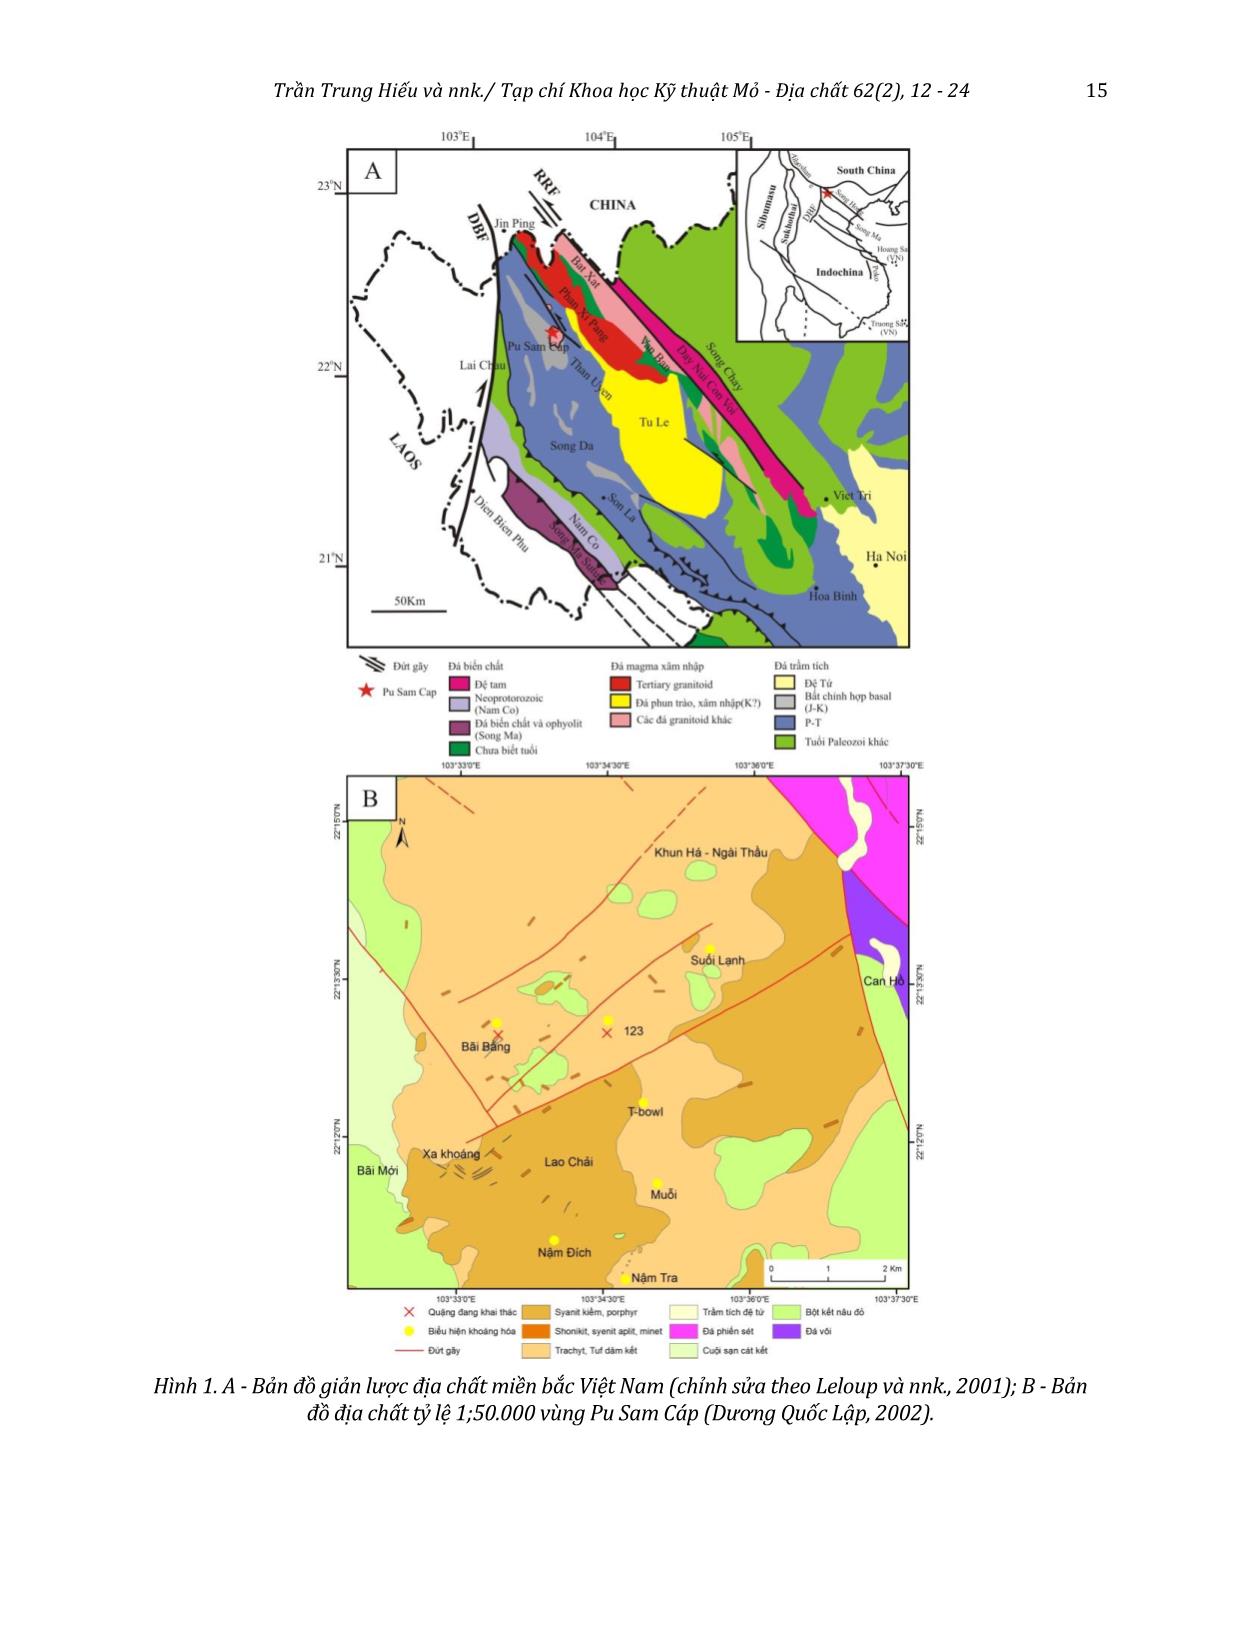 Xác định các đới biến đổi giàu khoáng vật sét và oxit sắt sử dụng ảnh Landsat 8 khu vực Pu Sam Cáp, Lai Châu trang 4